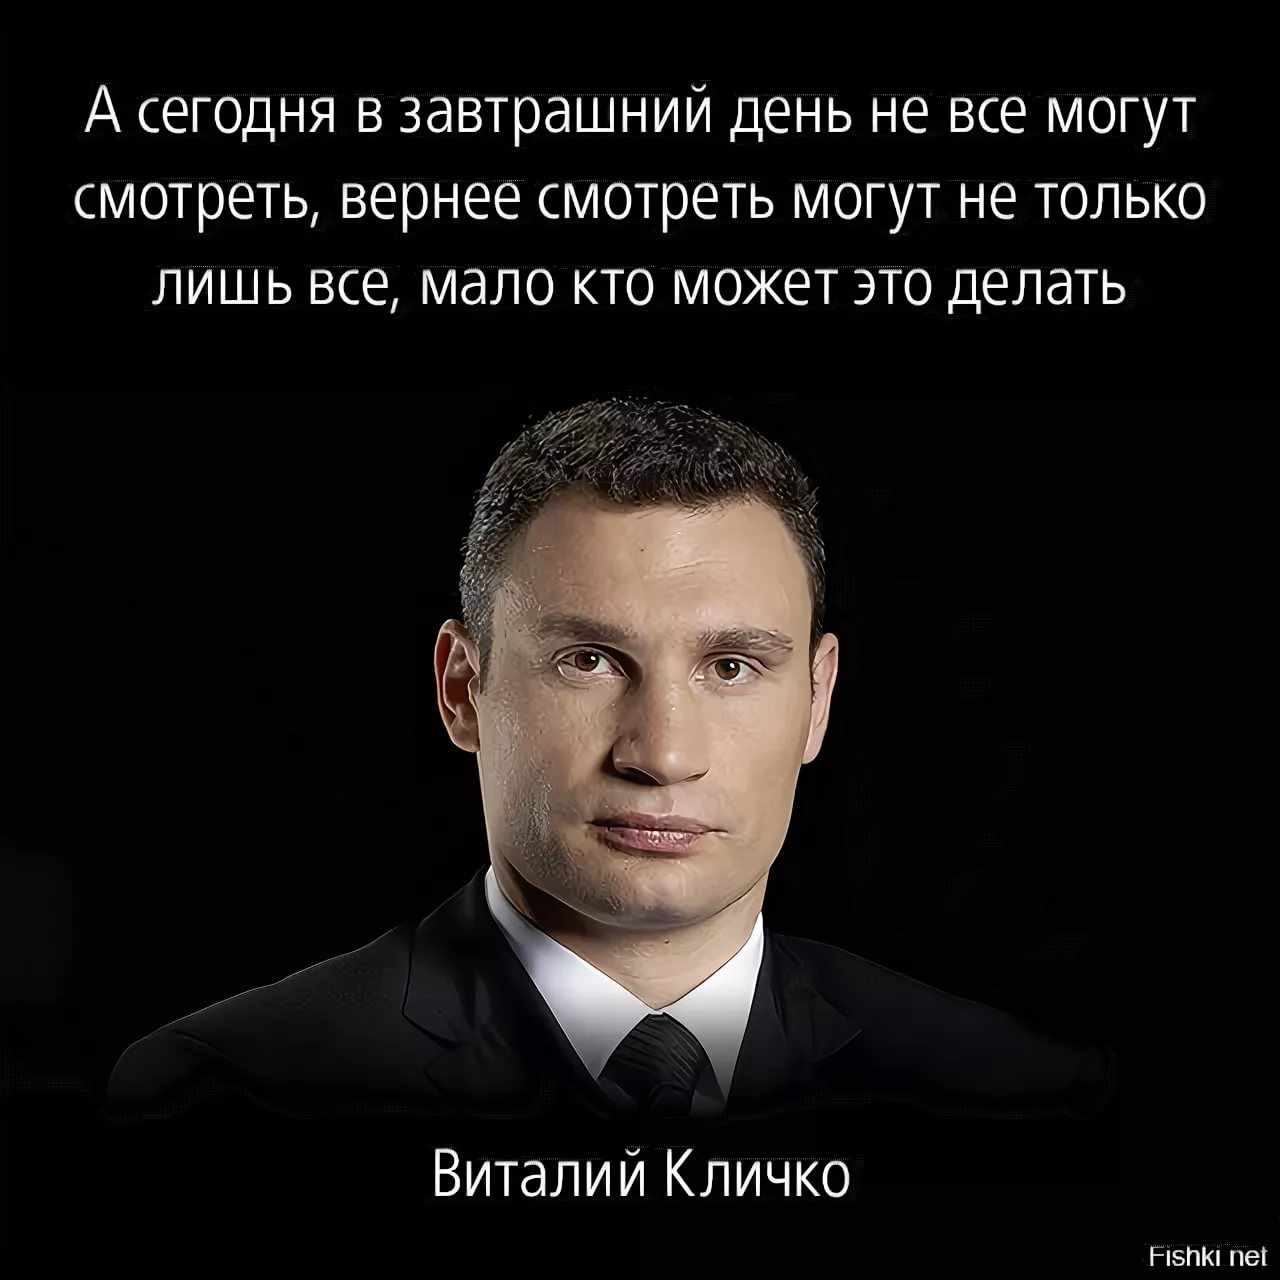 Цитаты Кличко (17)